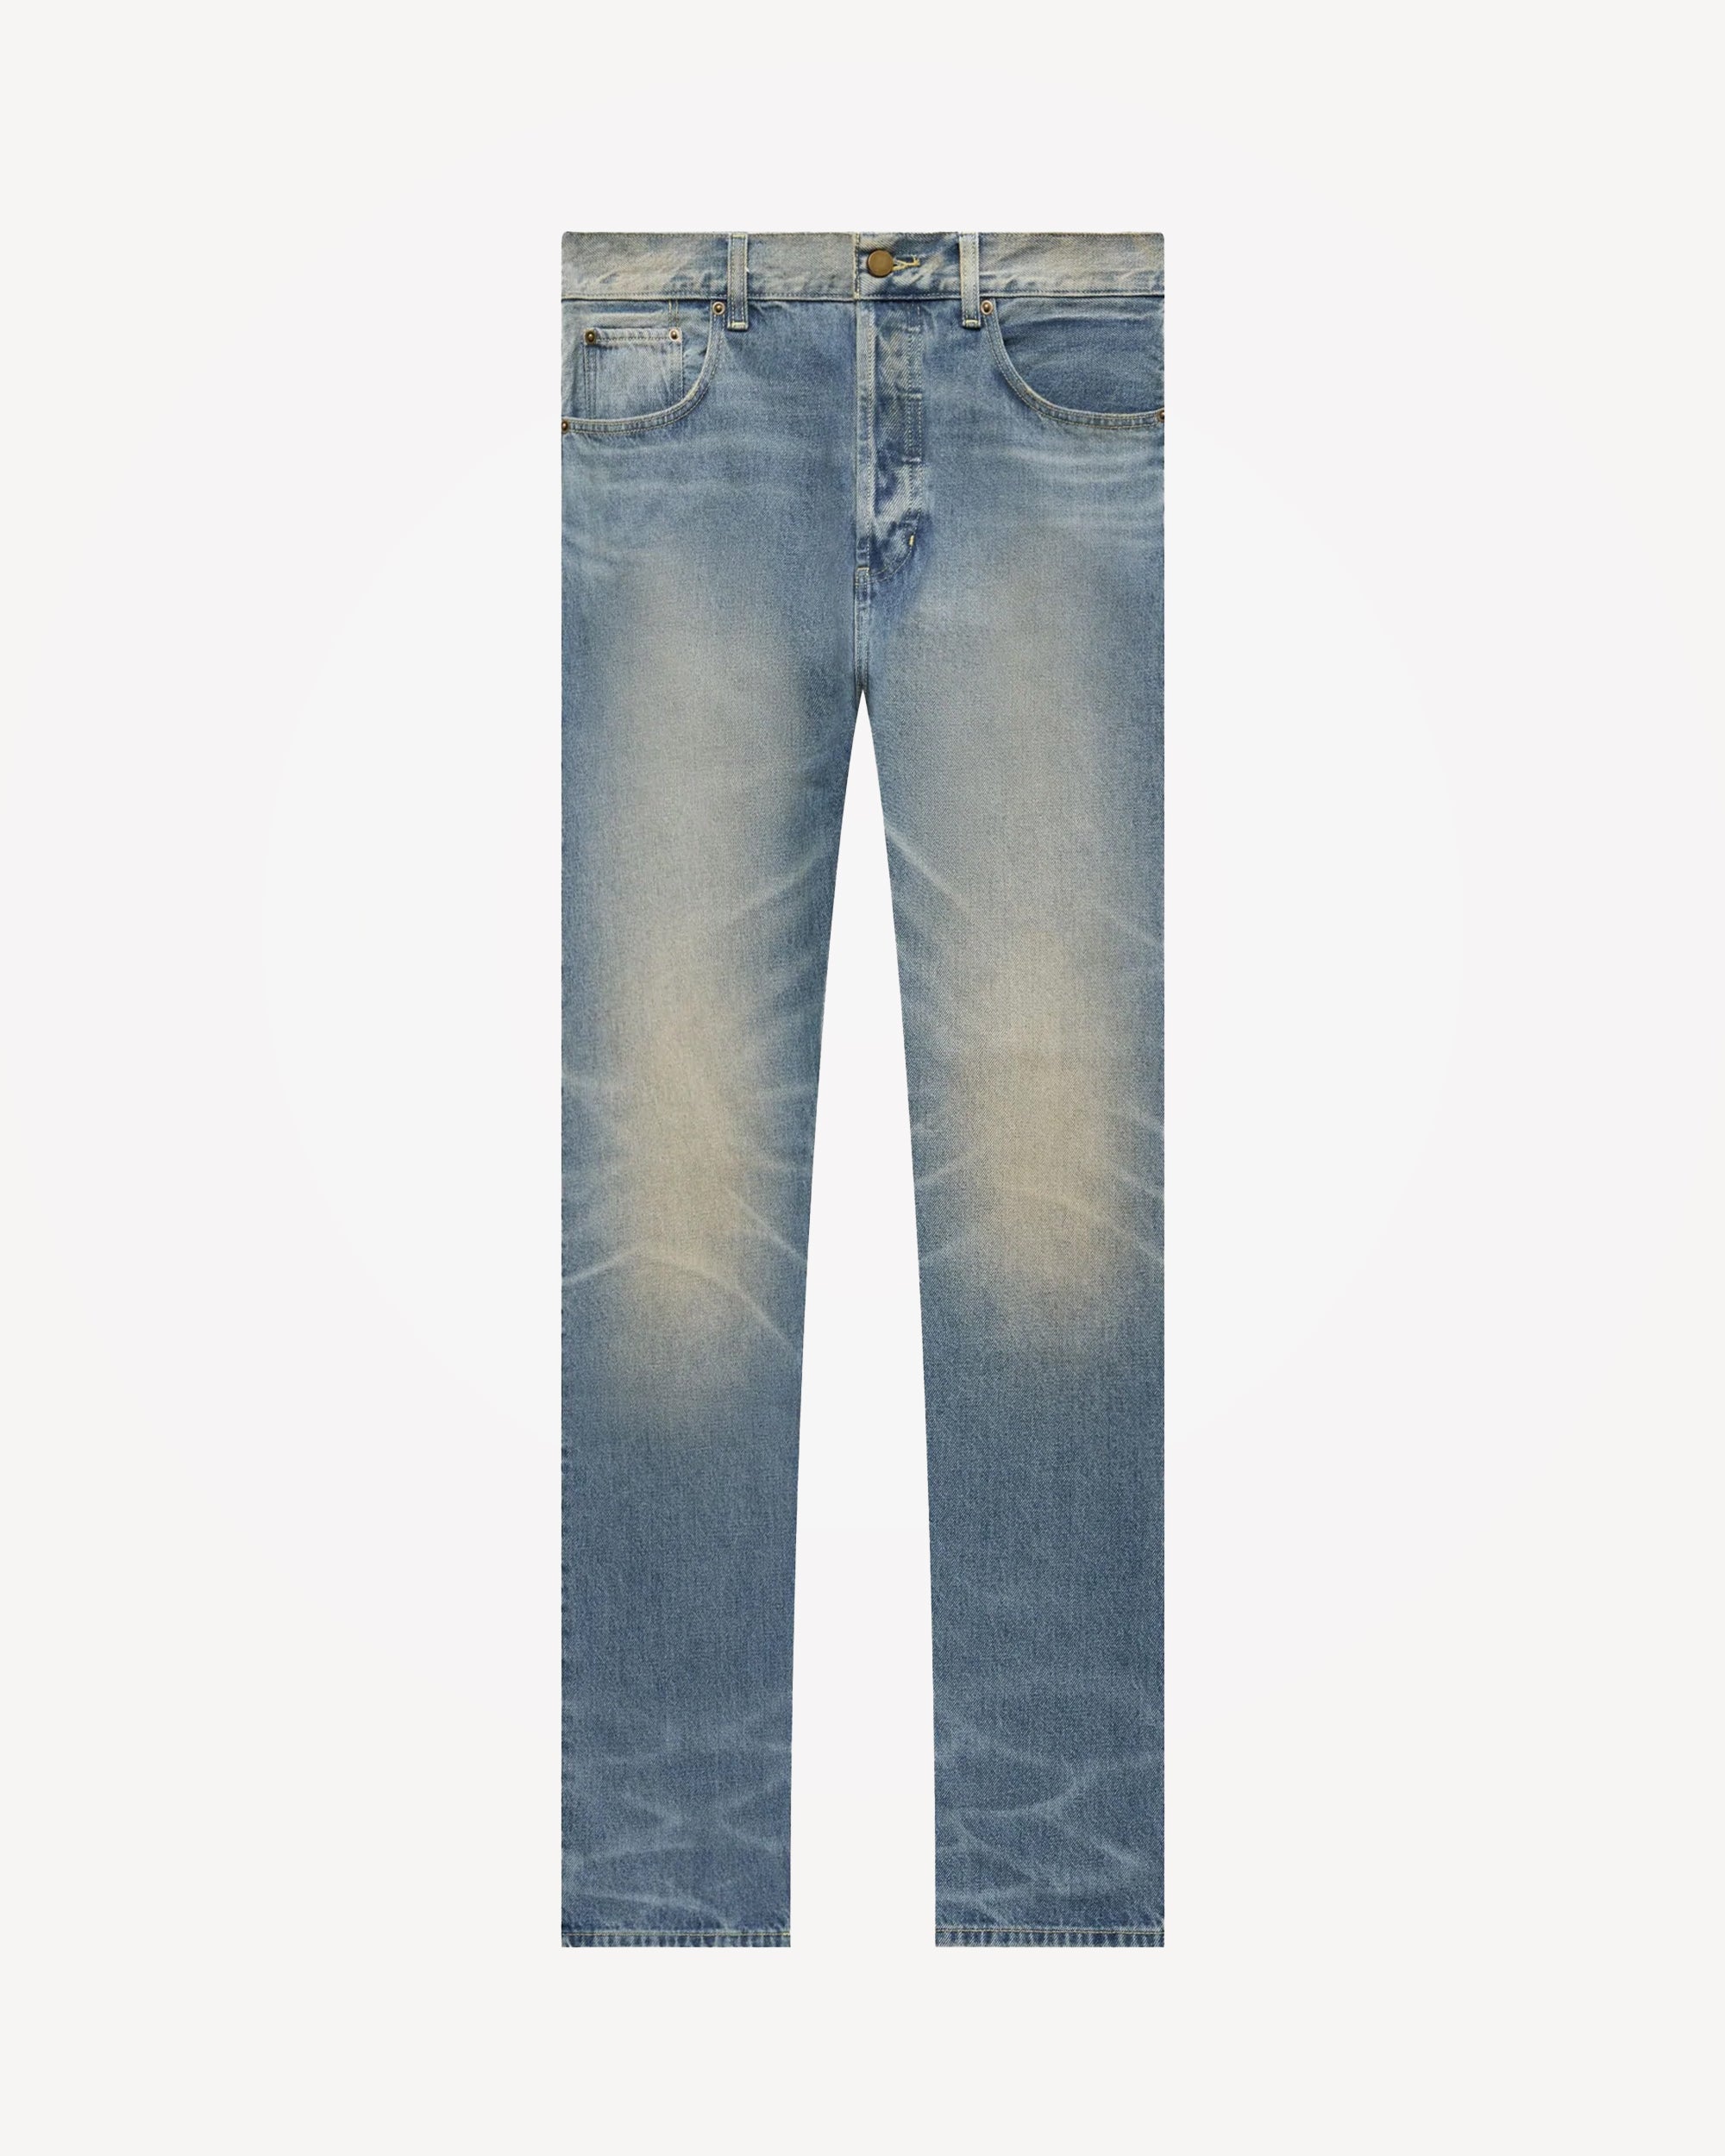 Men's 5 Pocket Jeans in Indigo